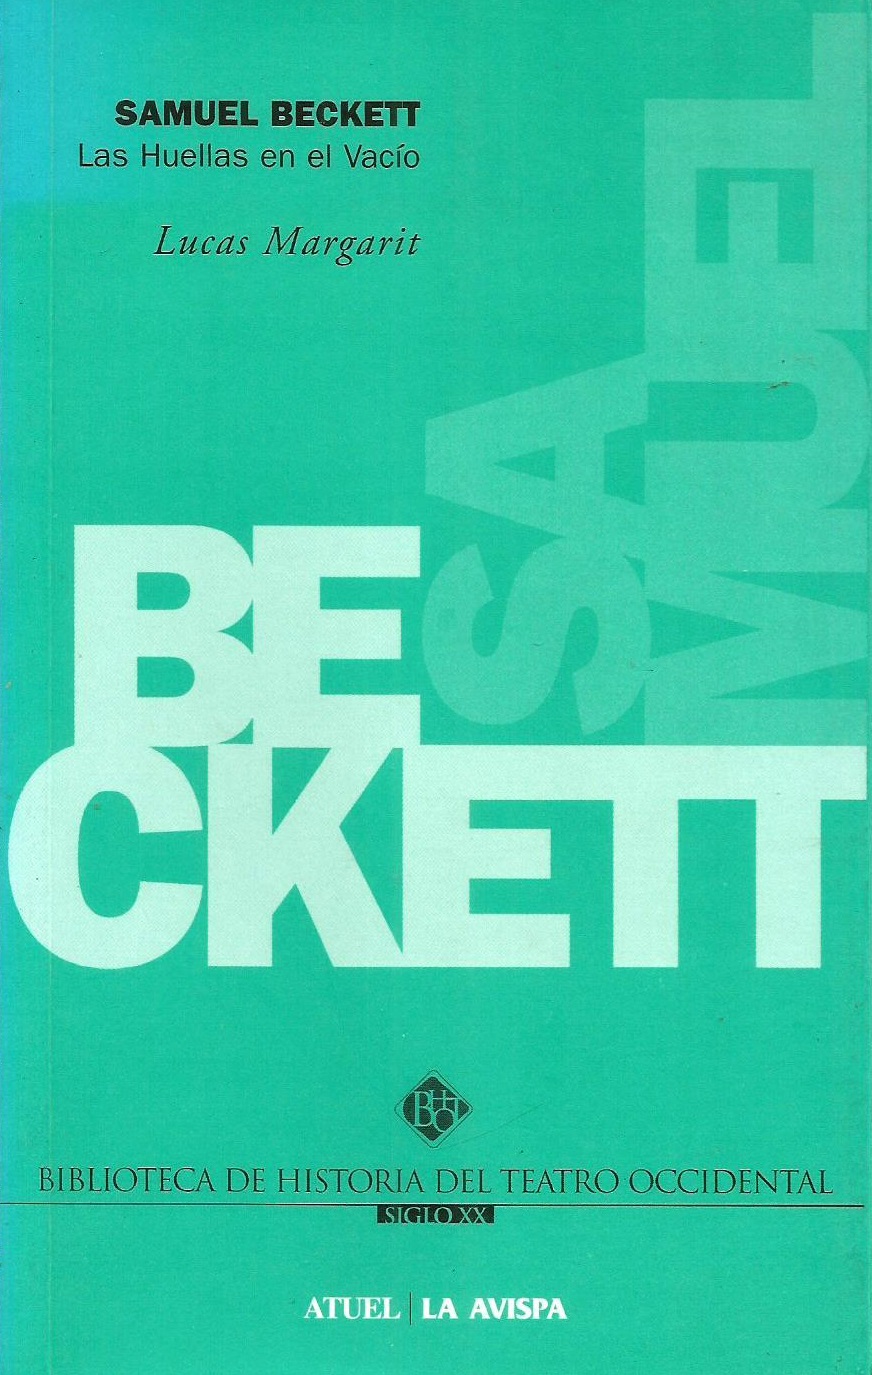 Libros Margarit 7 – Samuel Beckett. Las huellas en el vacío